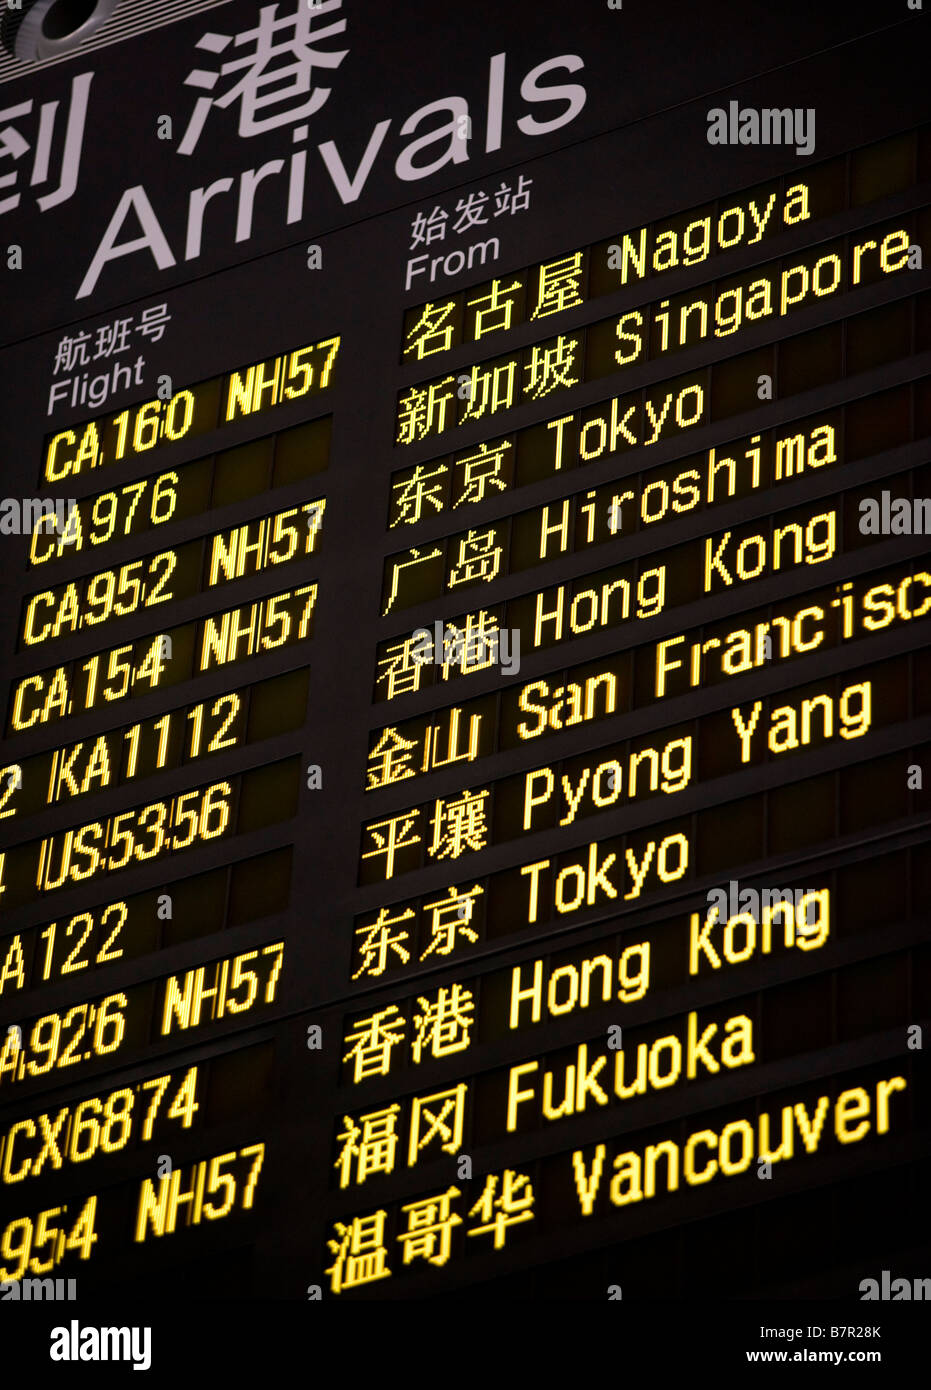 L'arrivée des vols internationaux de l'information de vol de la carte d'affichage électroniques écrans à nouveau Beijing Airport Terminal 3 Chine 2009 Banque D'Images